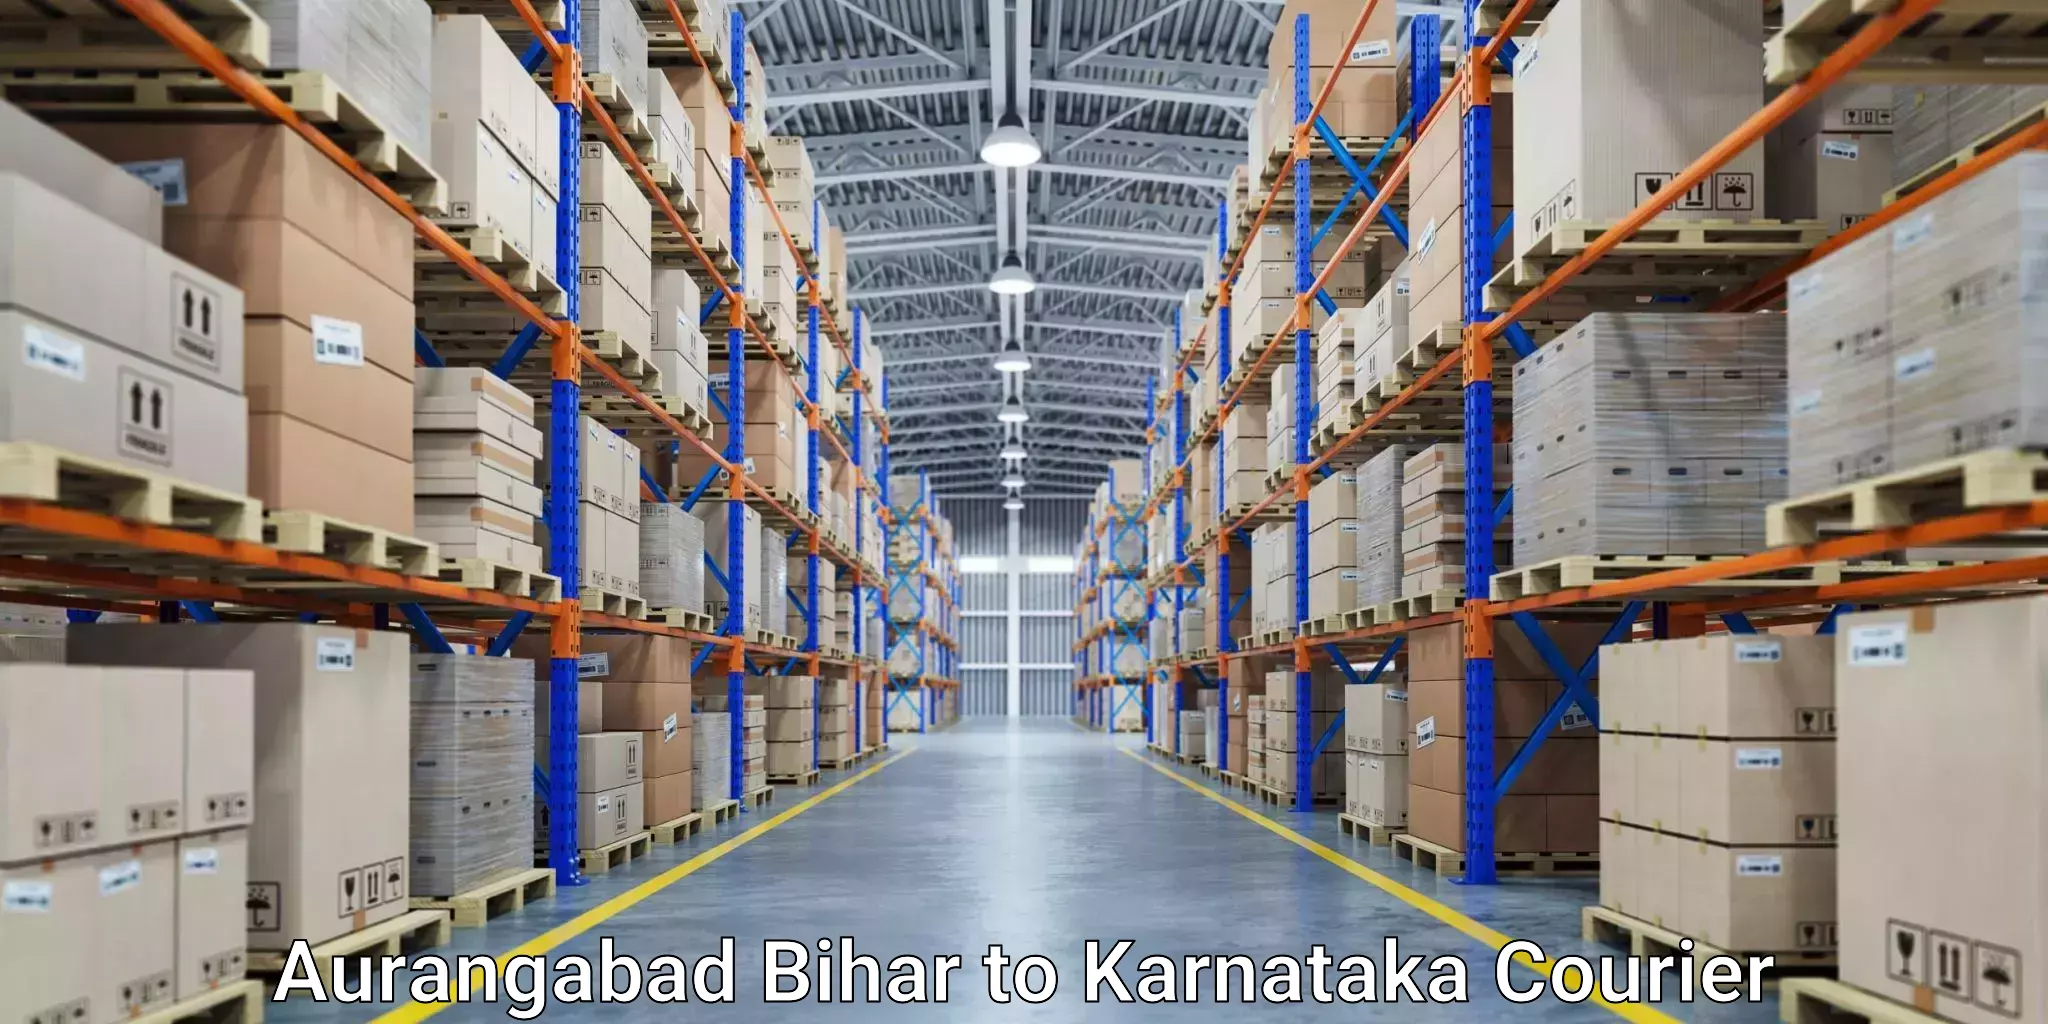 Business courier solutions in Aurangabad Bihar to IIIT Raichur